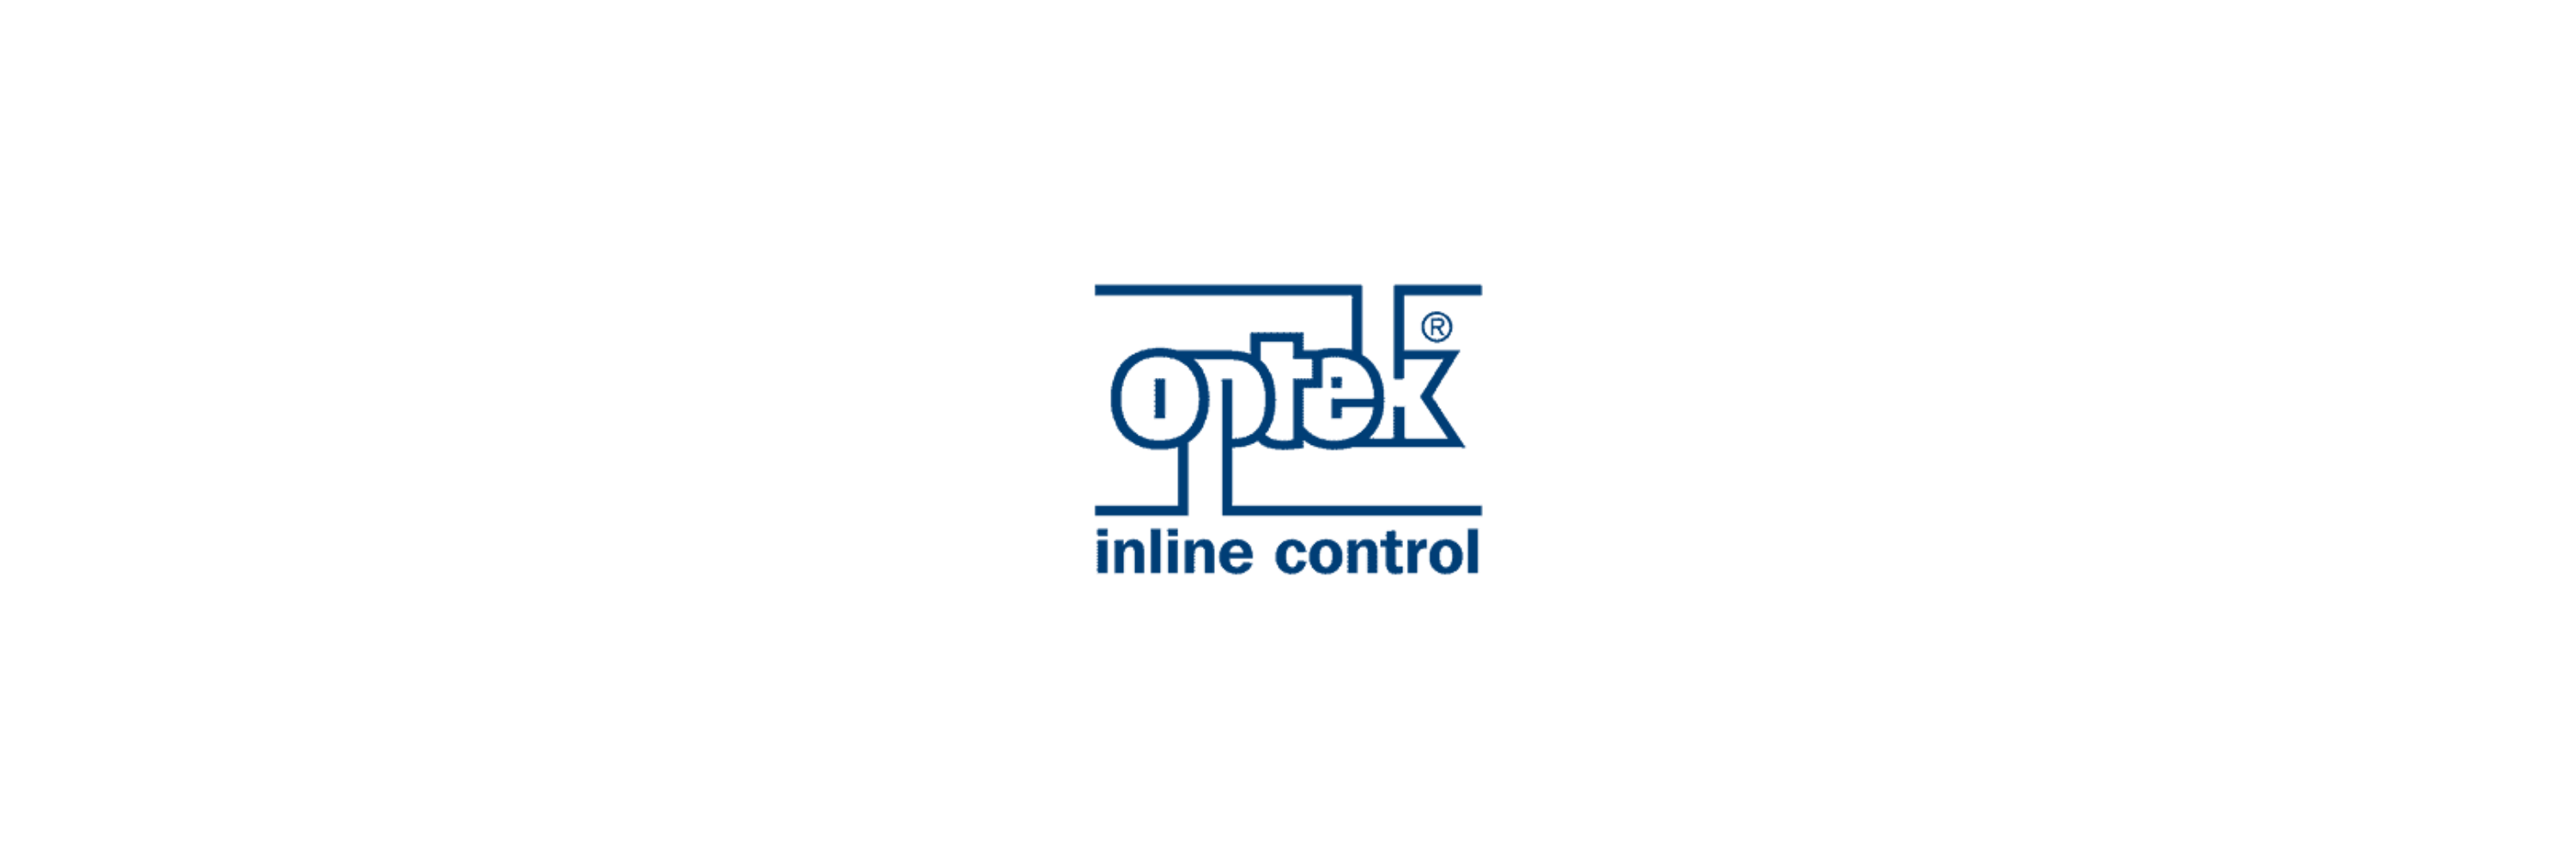 optek-Danulat - Klenk Maschinenhandel